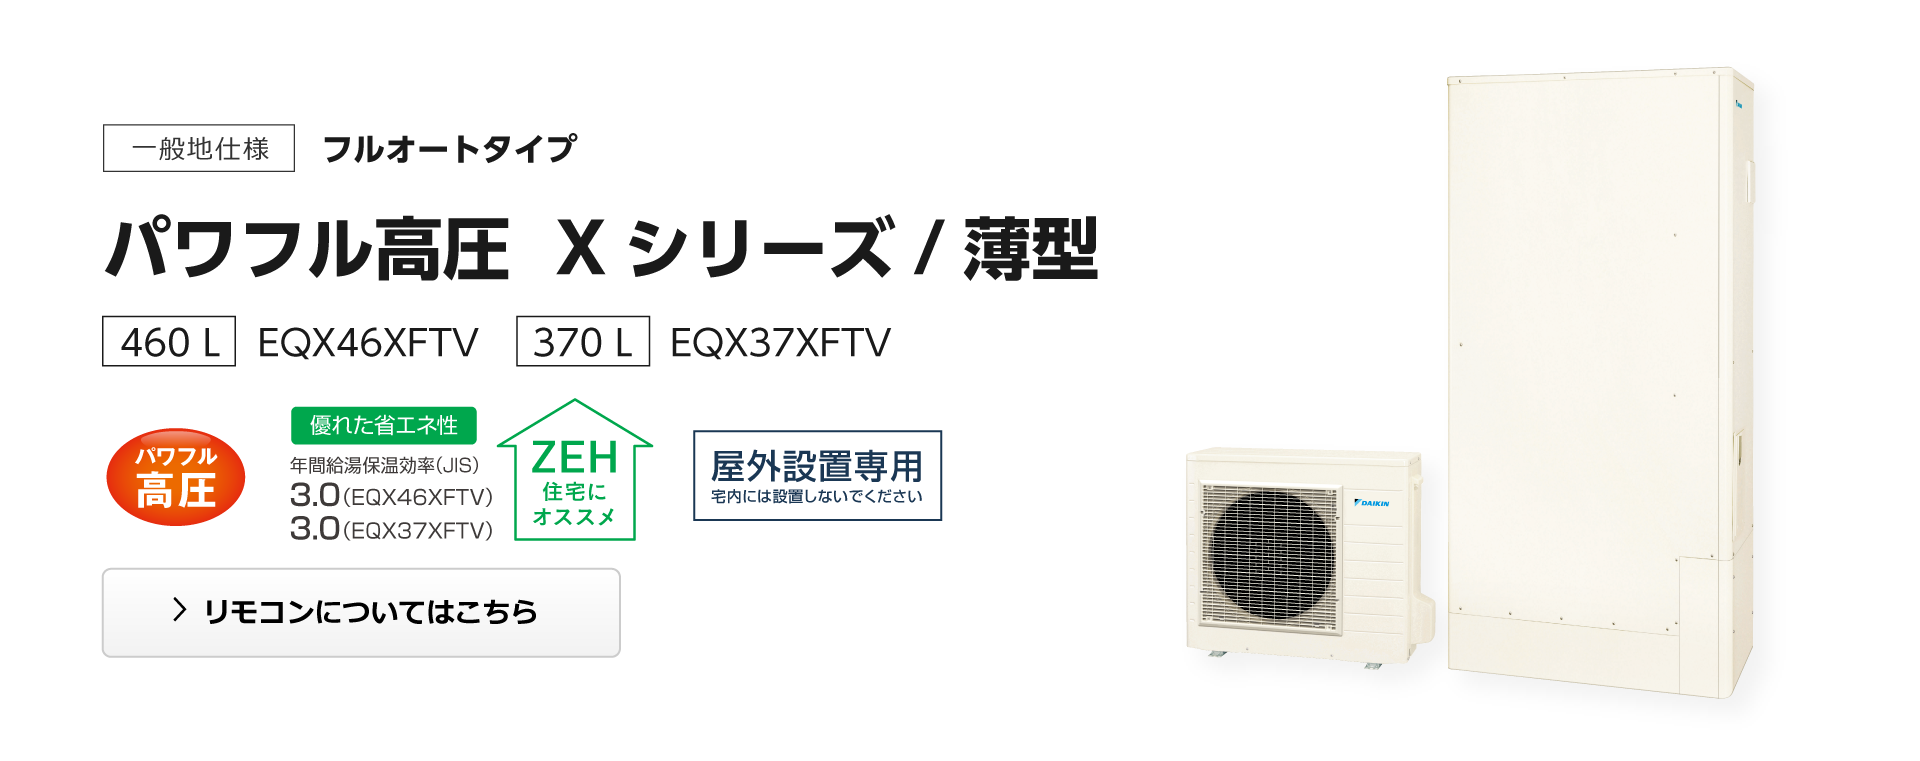 期間限定早割 ダイキン EQ46XFTV エコキュート 本体のみ 薄型 一般地仕様 フルオートタイプ パワフル高圧 460L [♪]  その他住宅設備家電